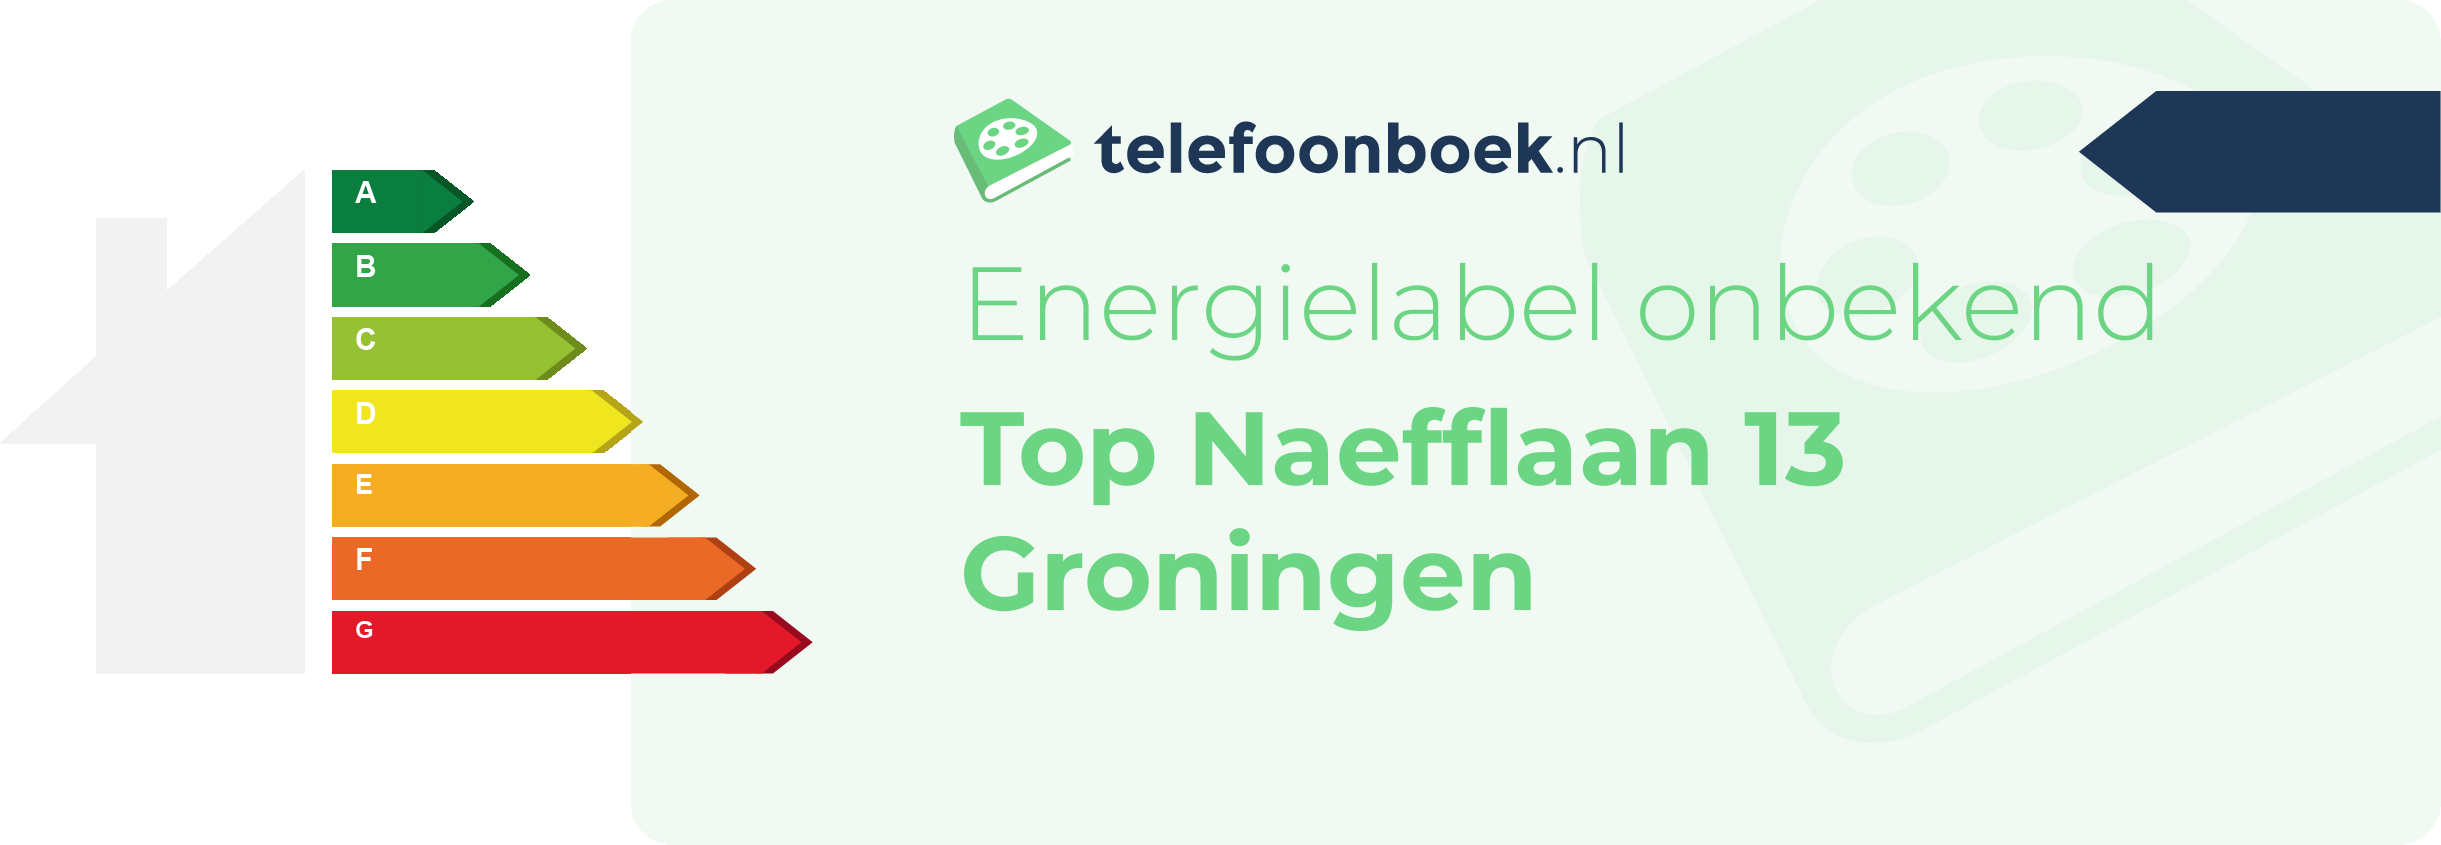 Energielabel Top Naefflaan 13 Groningen